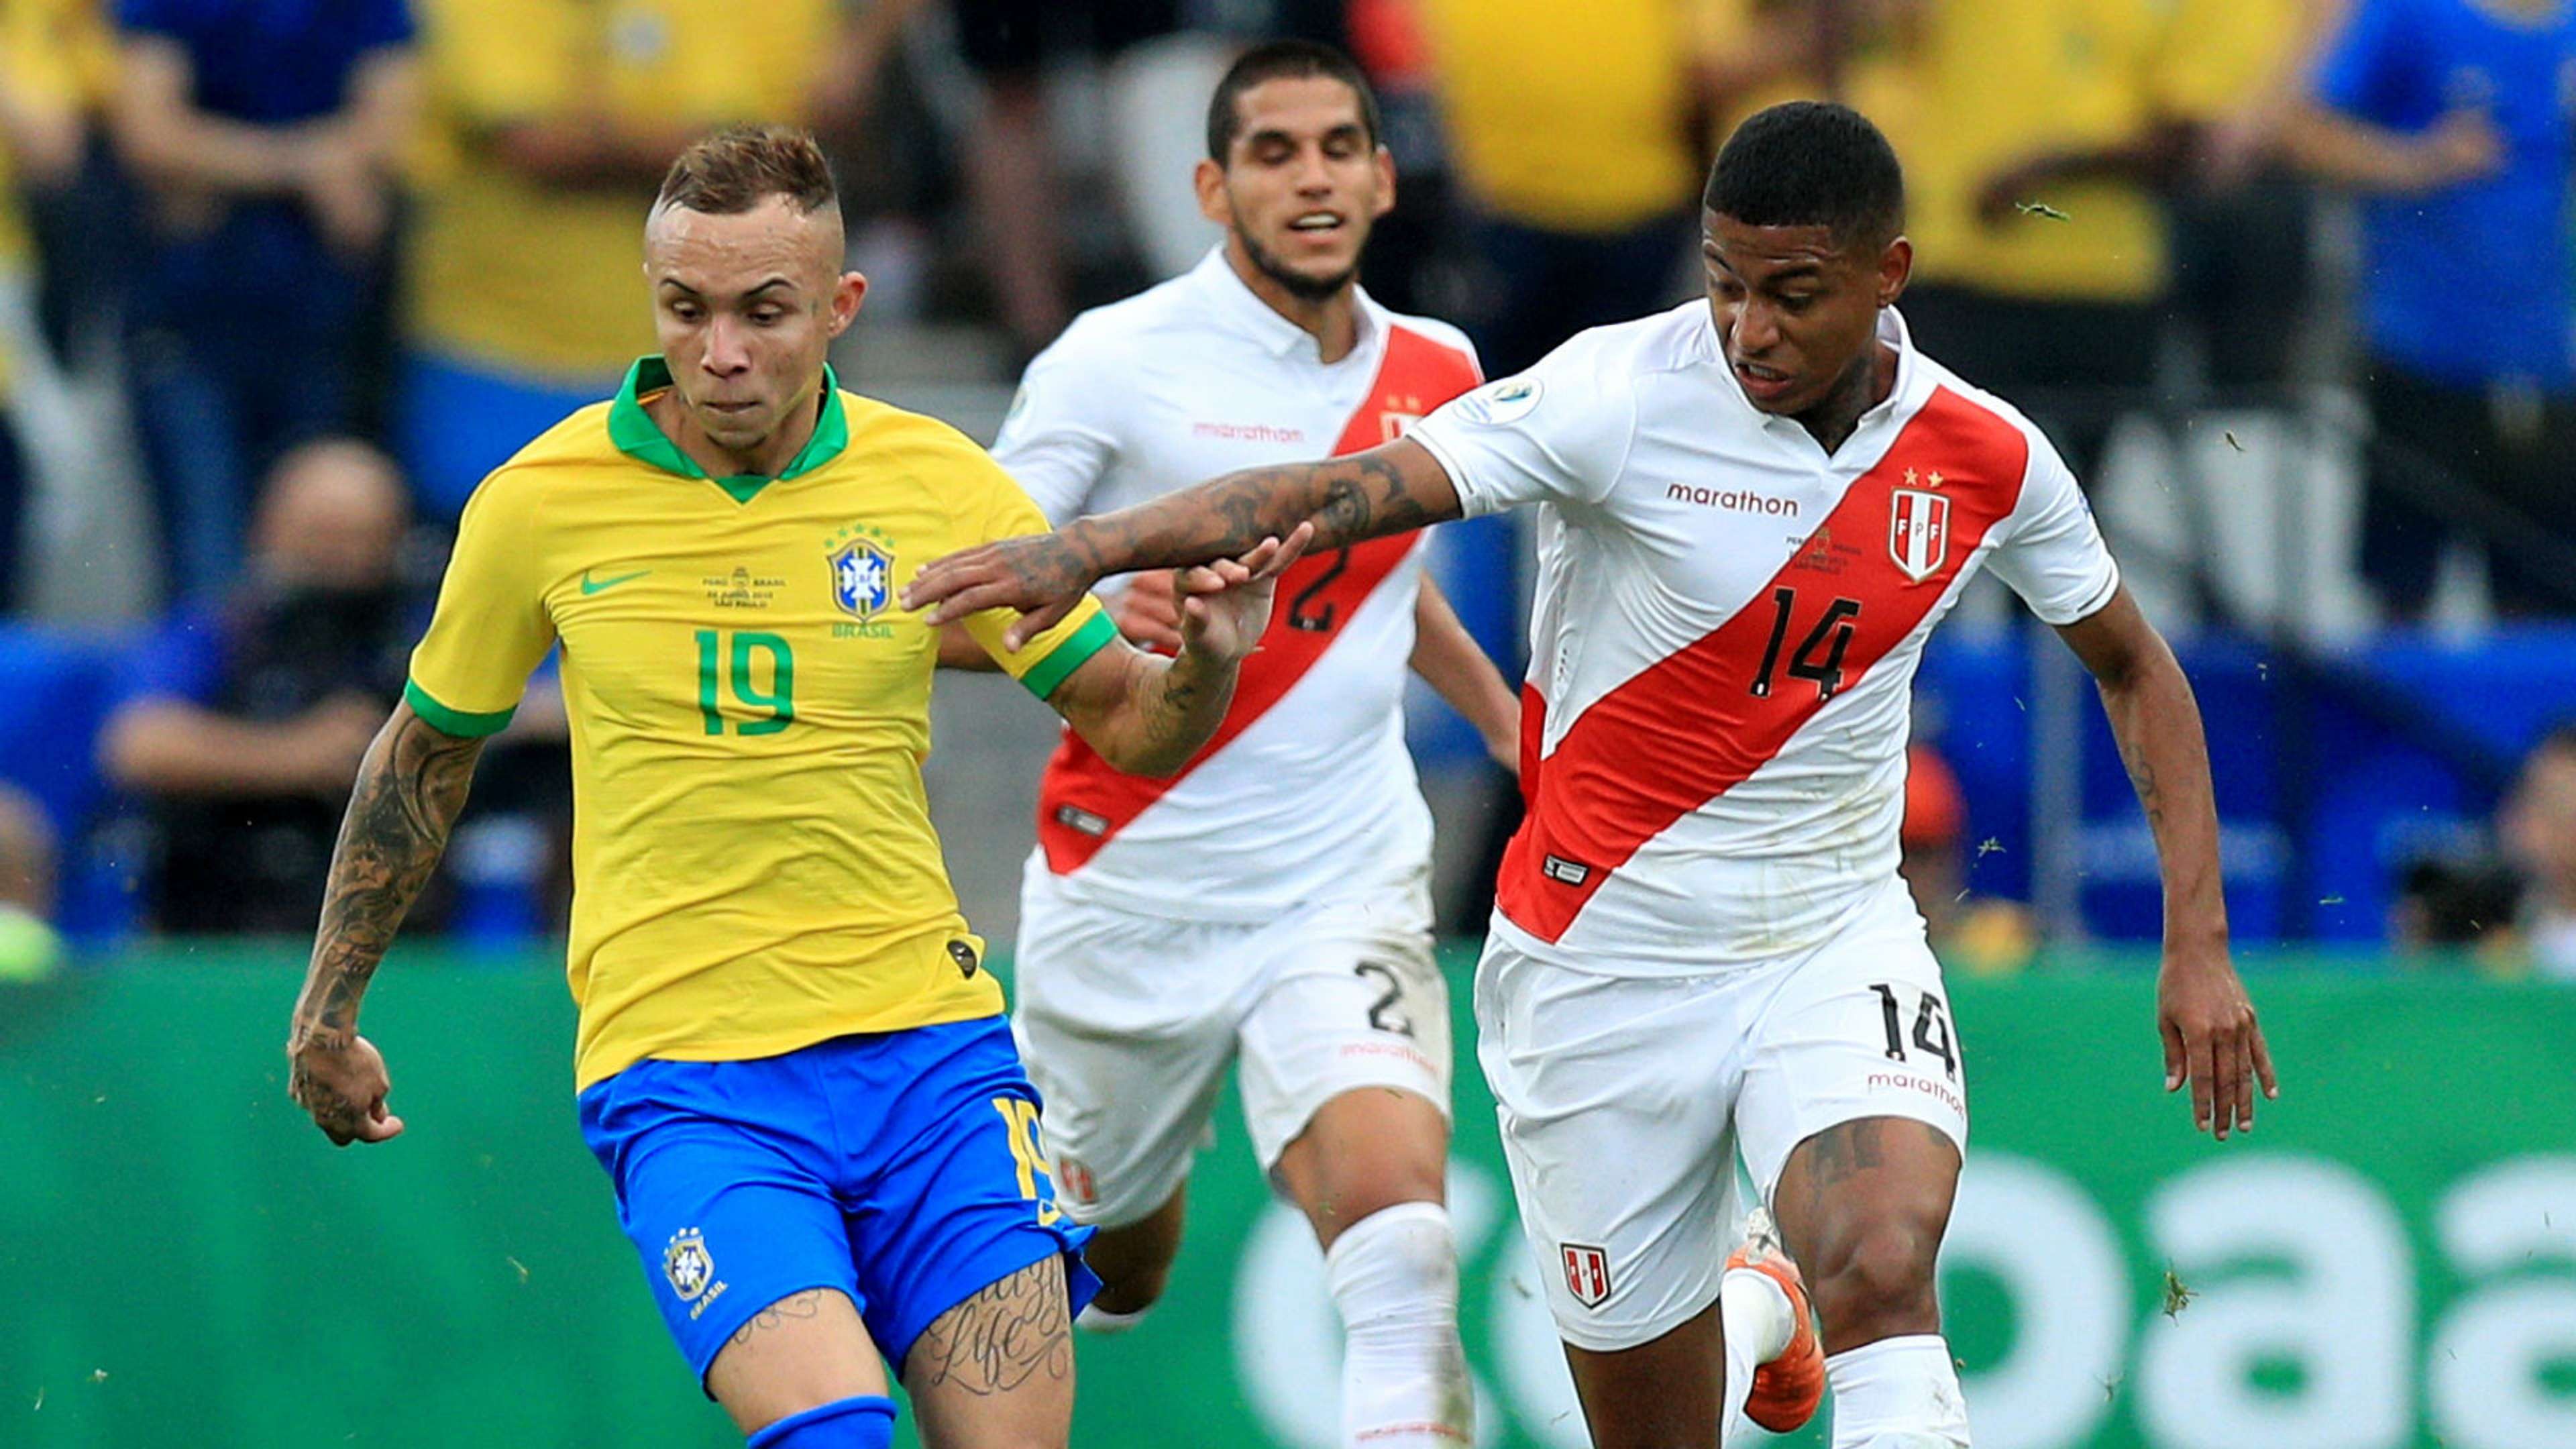 Everton Brazil Peru Copa America 2019